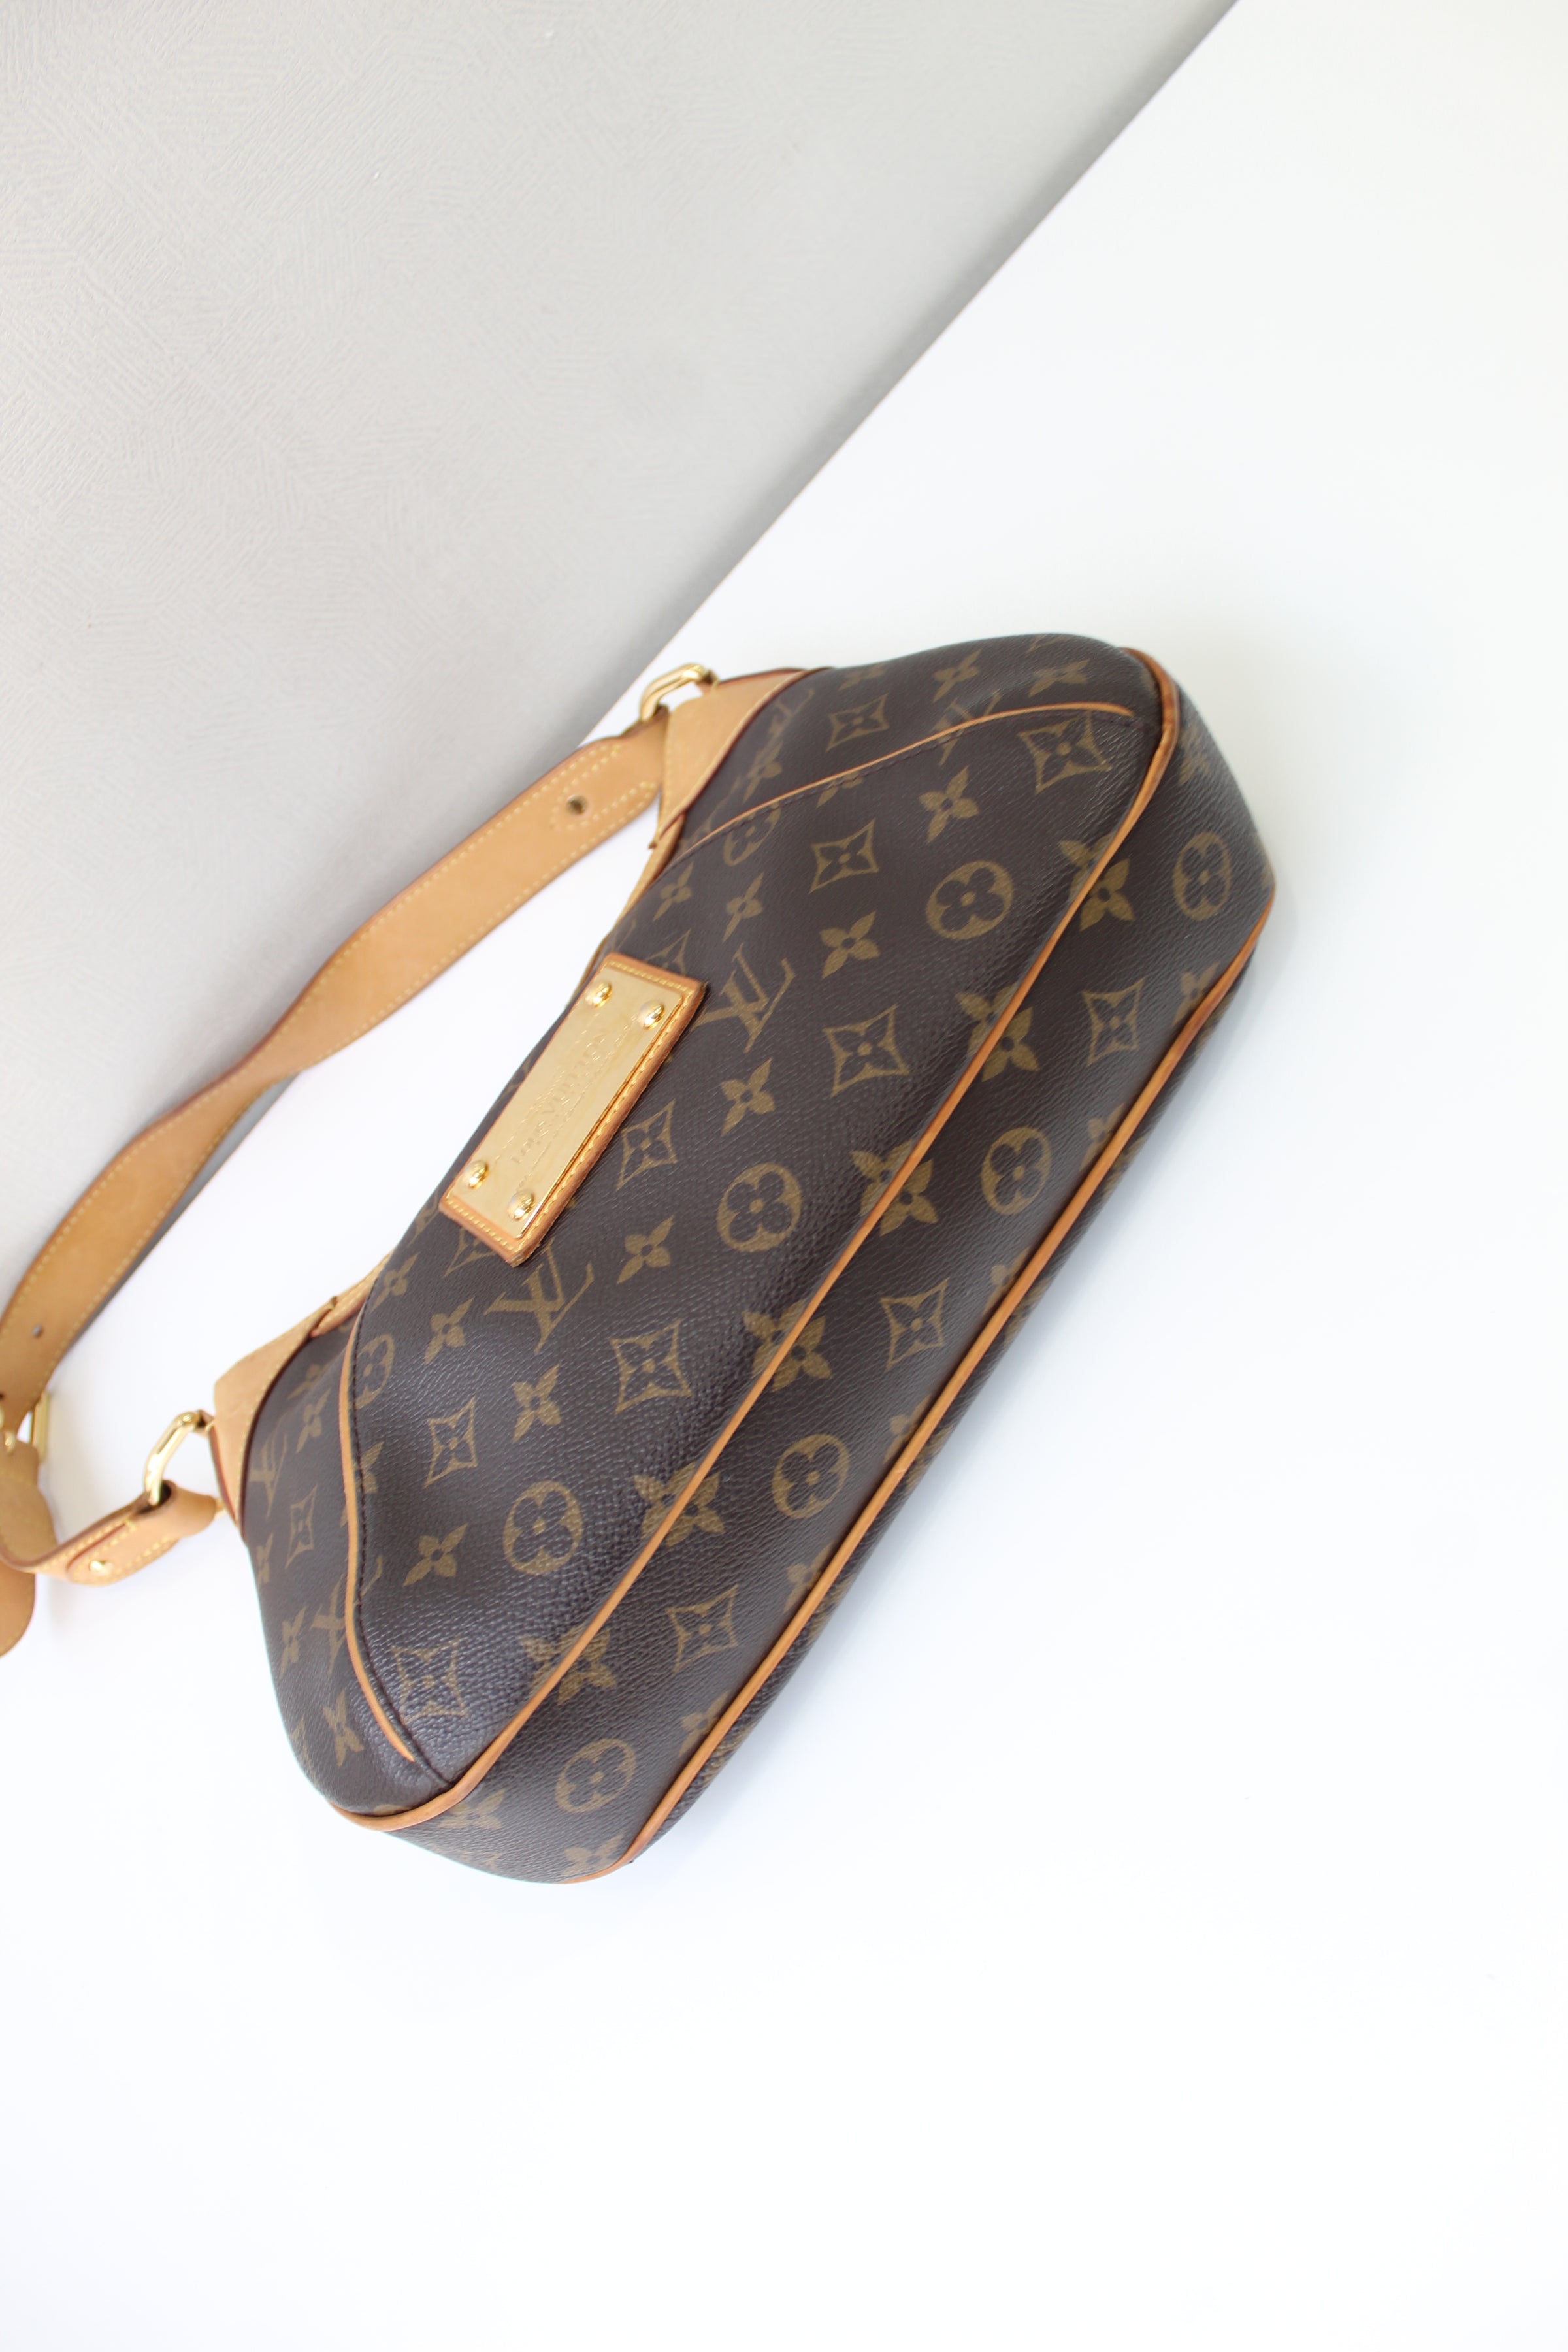 Louis Vuitton, Bags, Sold Louis Vuitton Thames Pm Excellent Condition